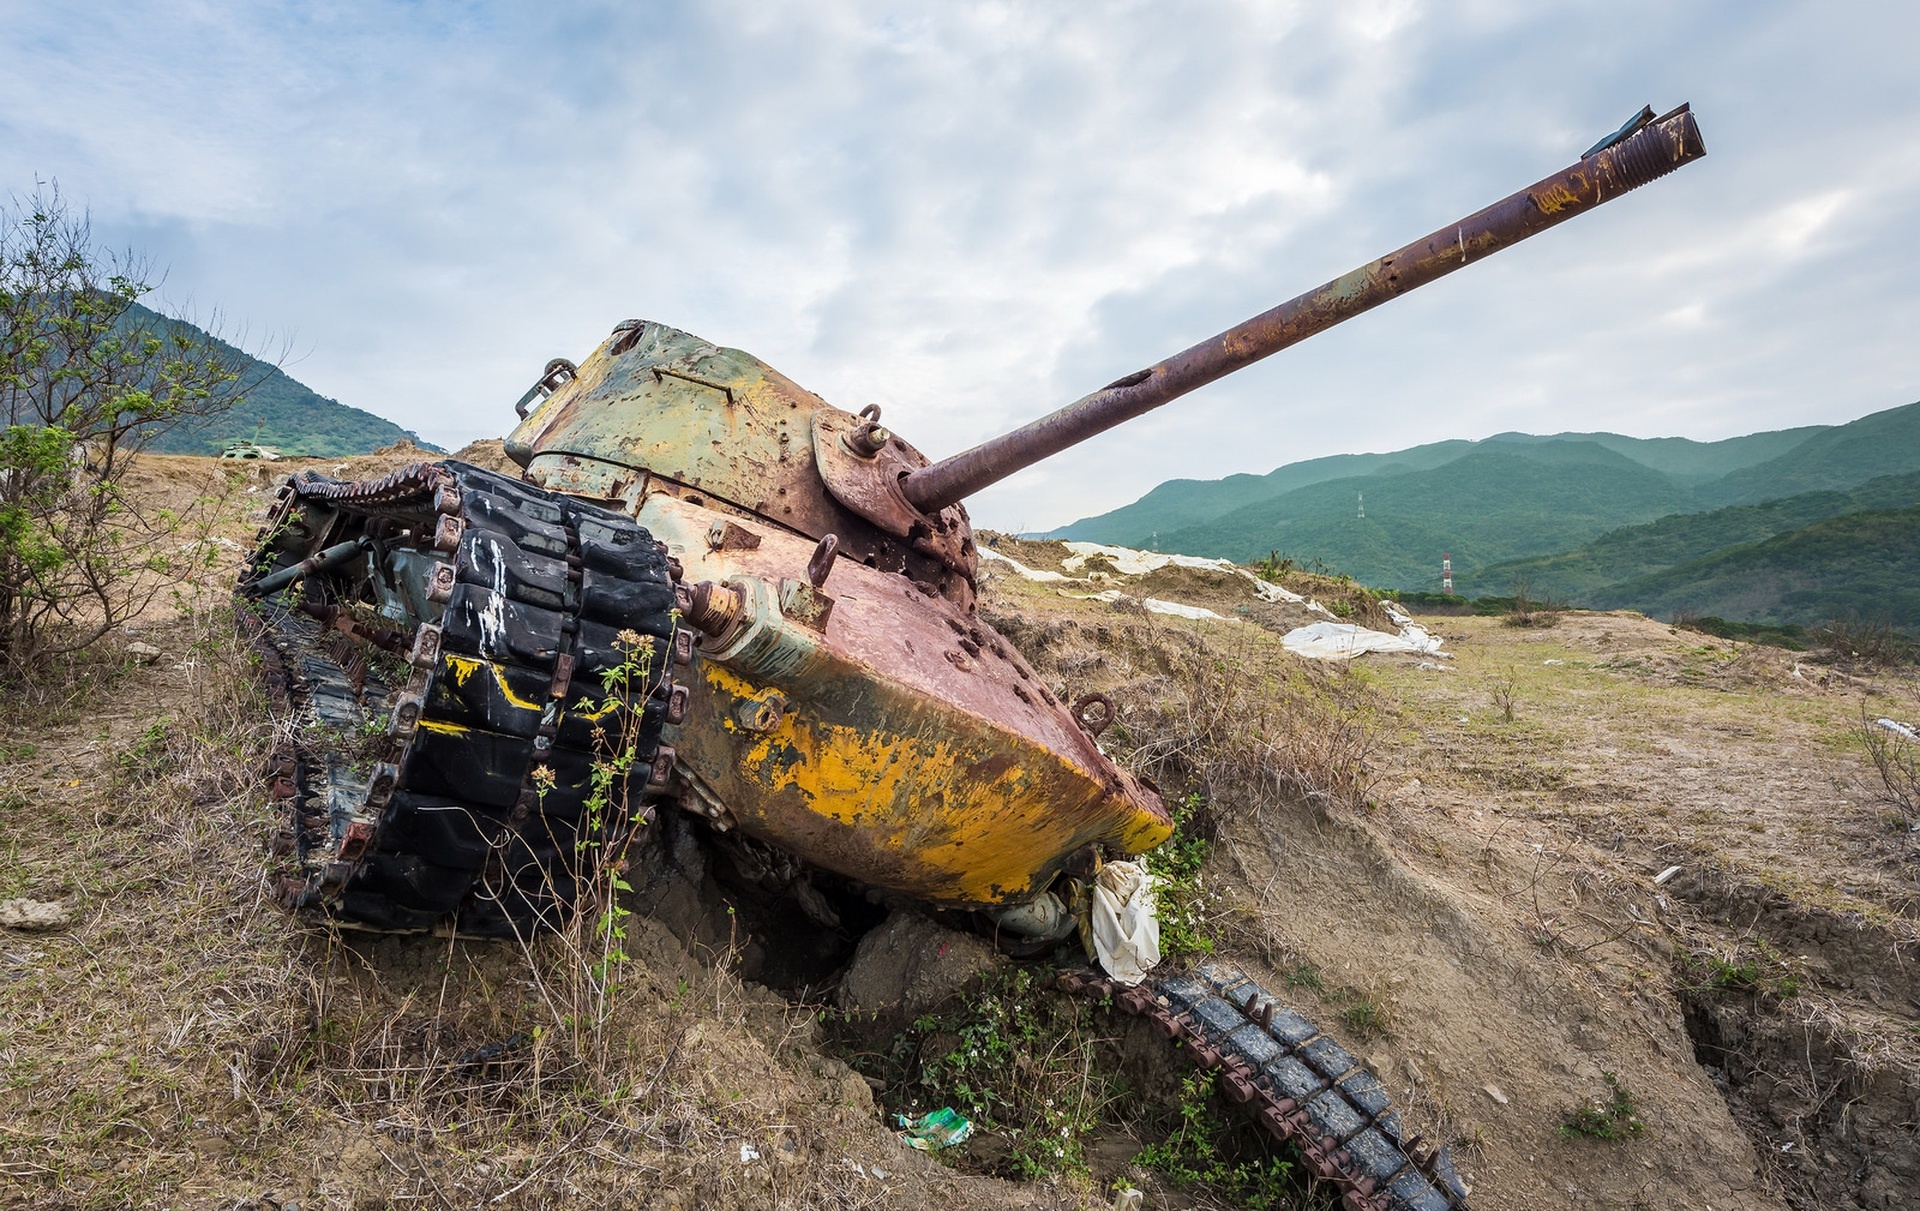 An antique blown up tank from the war